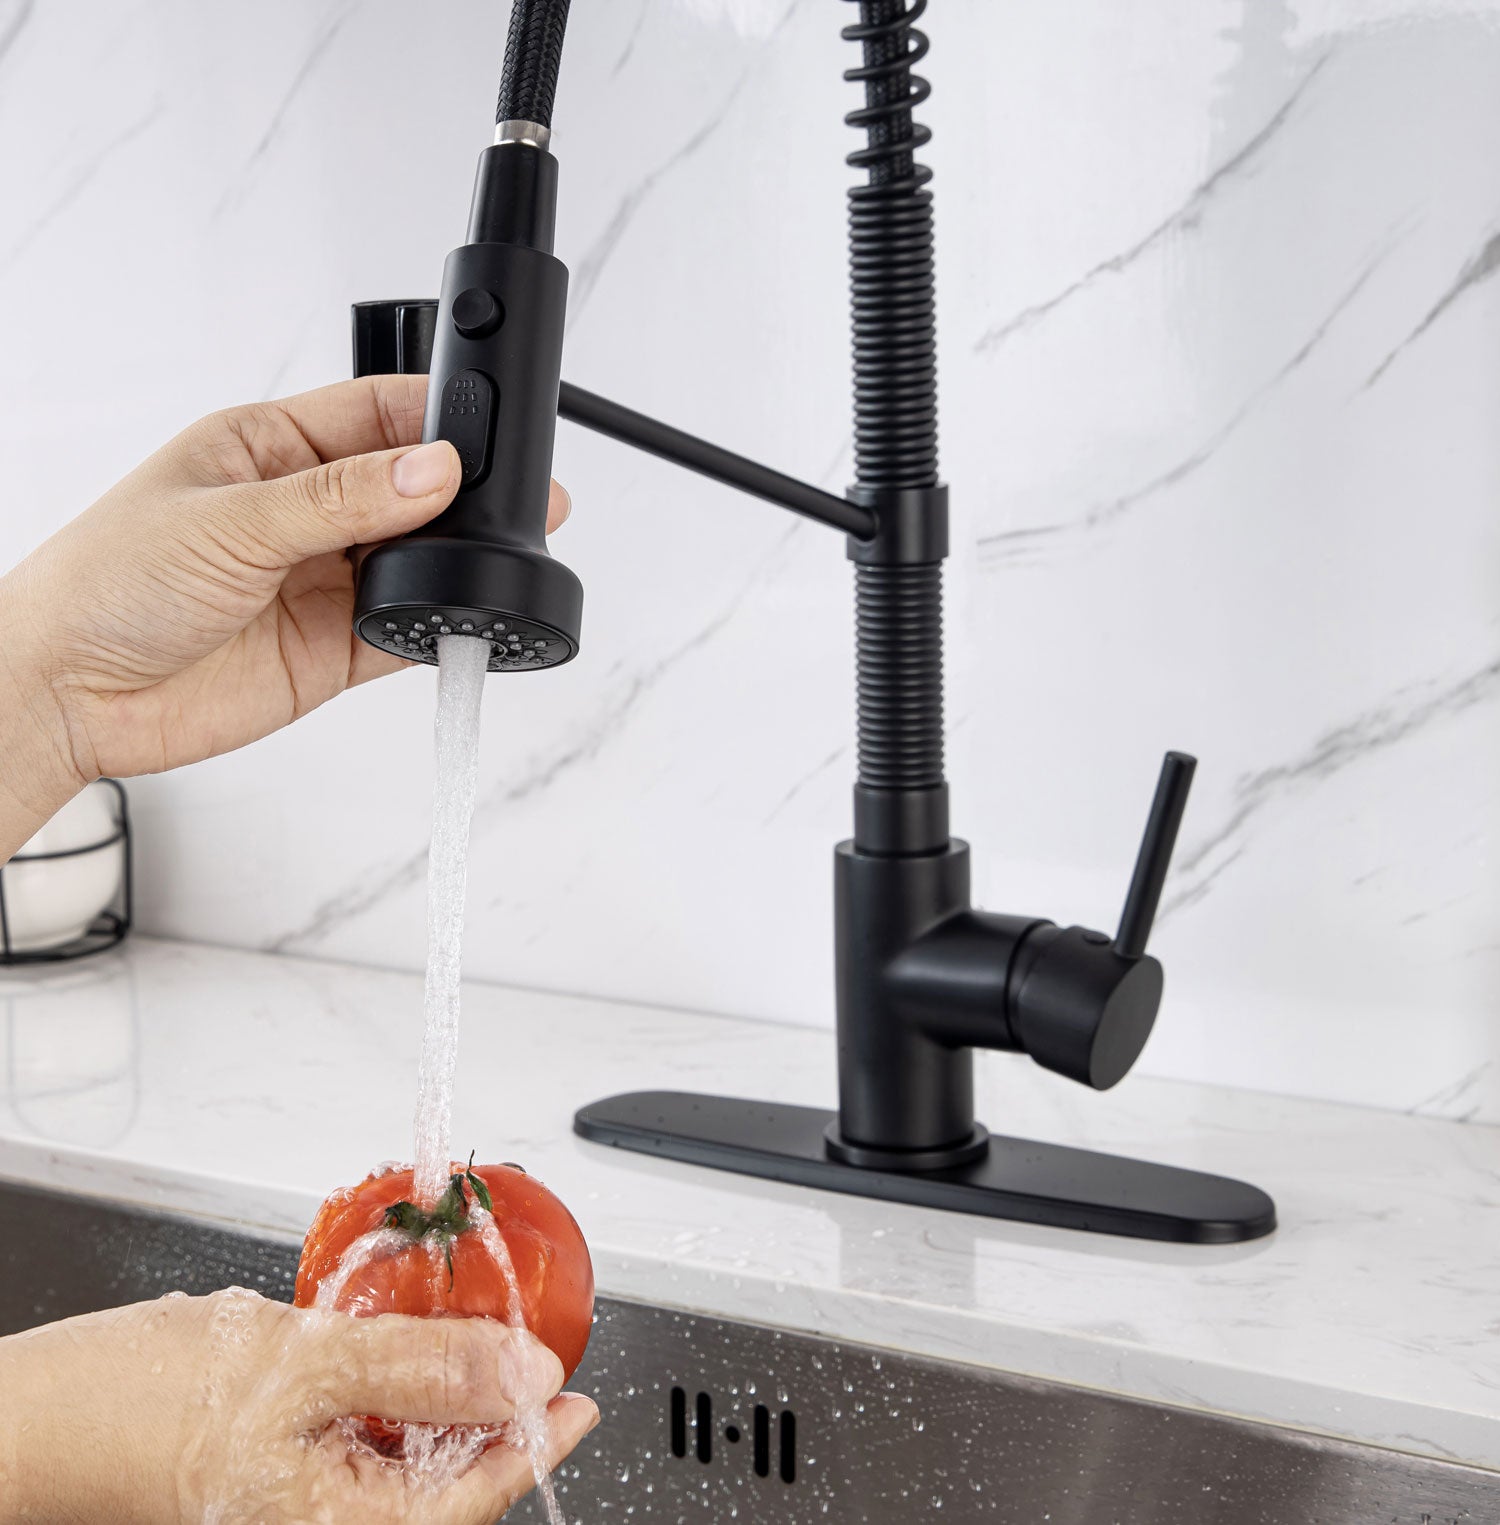 [Rainlex 6005] High Arc Pull-Out Modern Design Kitchen Faucet